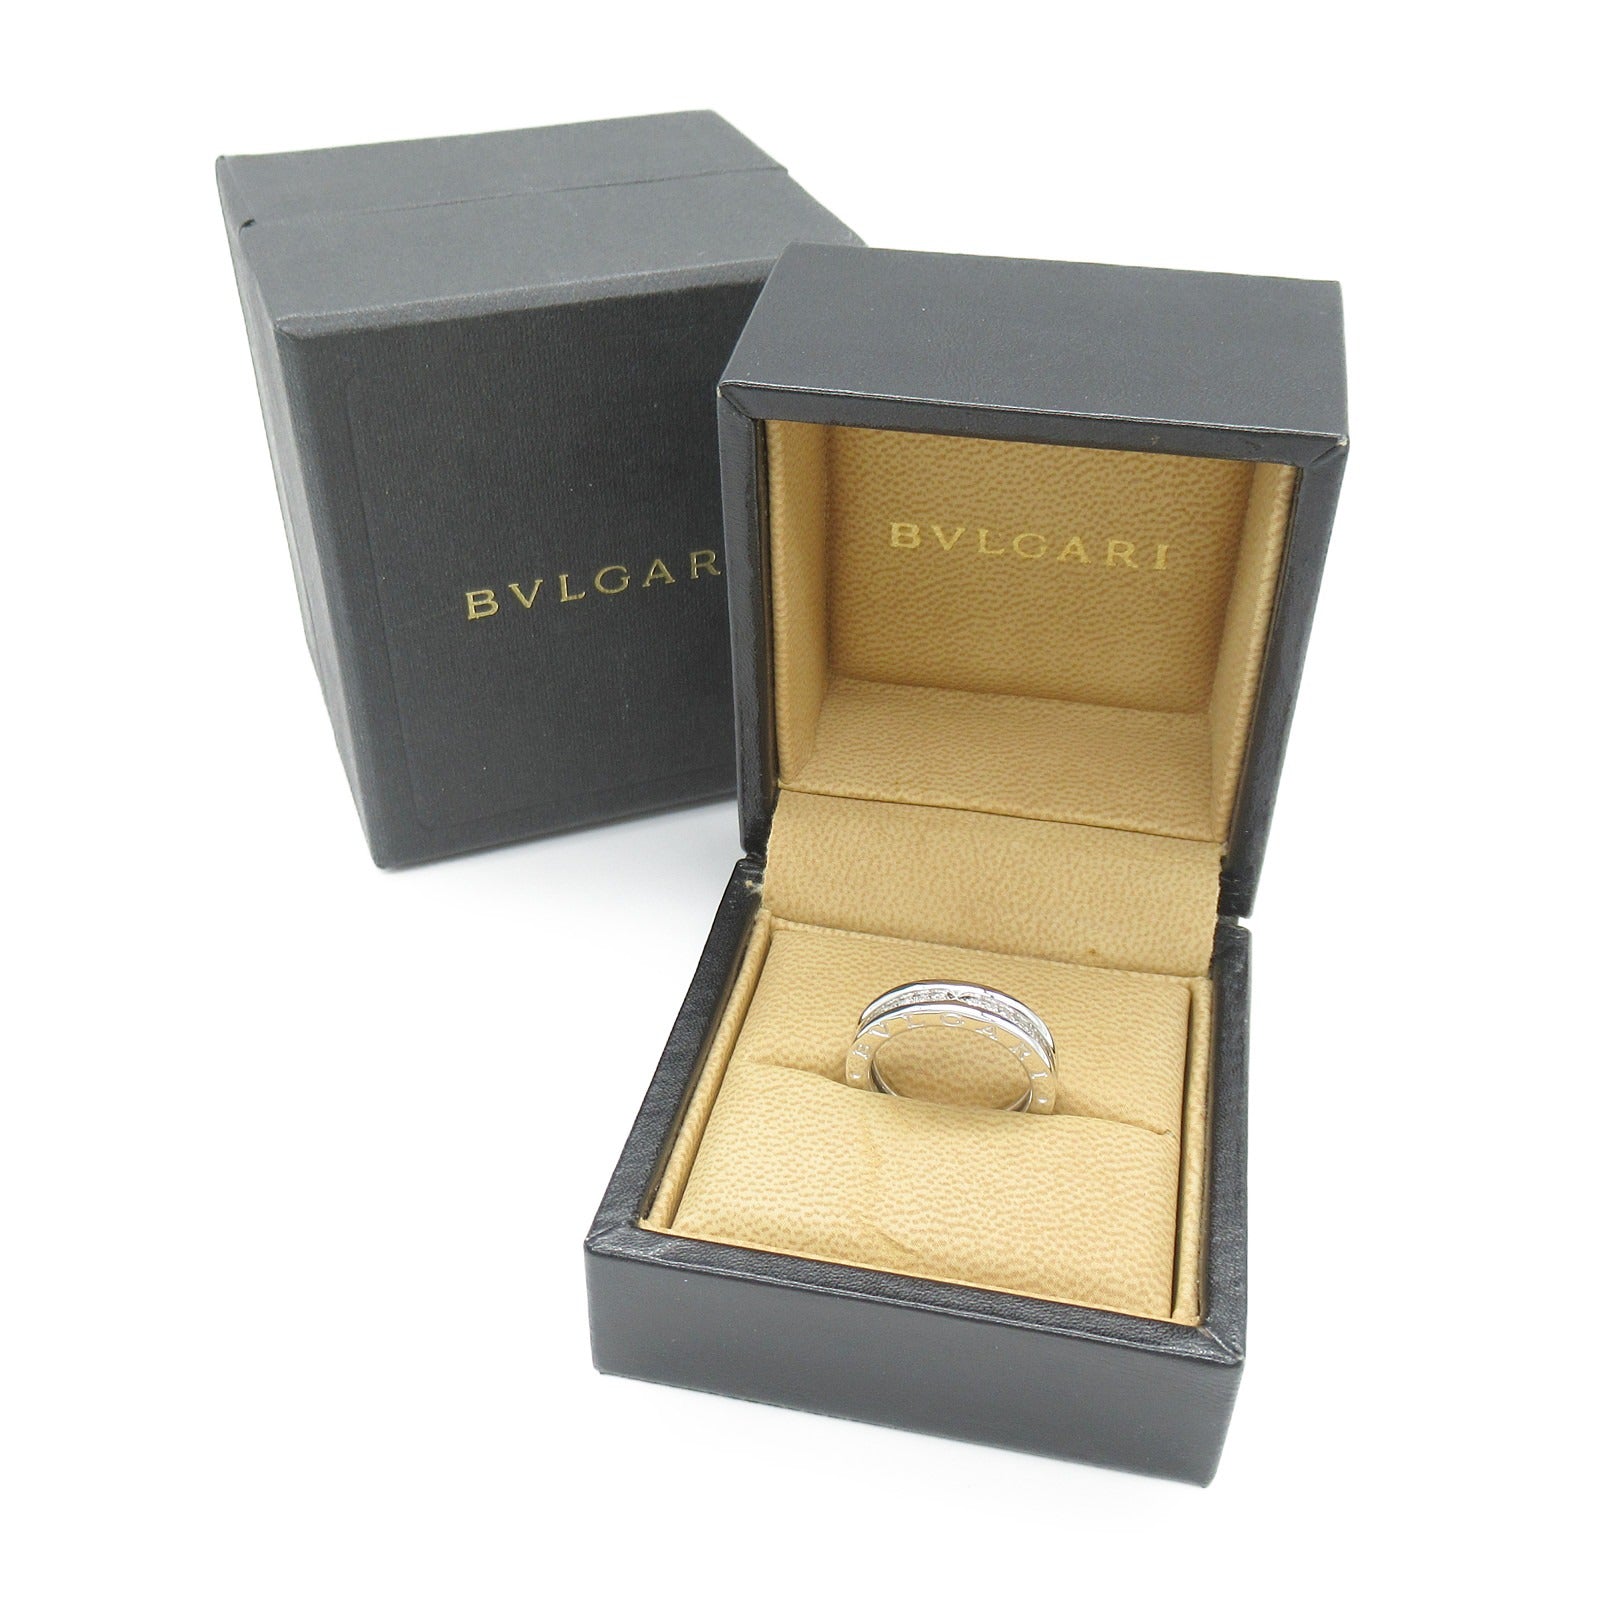 Bulgari BVLGARI B-zero1 BeeZero One Ring XS Diamond 1 Band Ring Ring Jewelry K18WG (White G) Diamond  Clearance